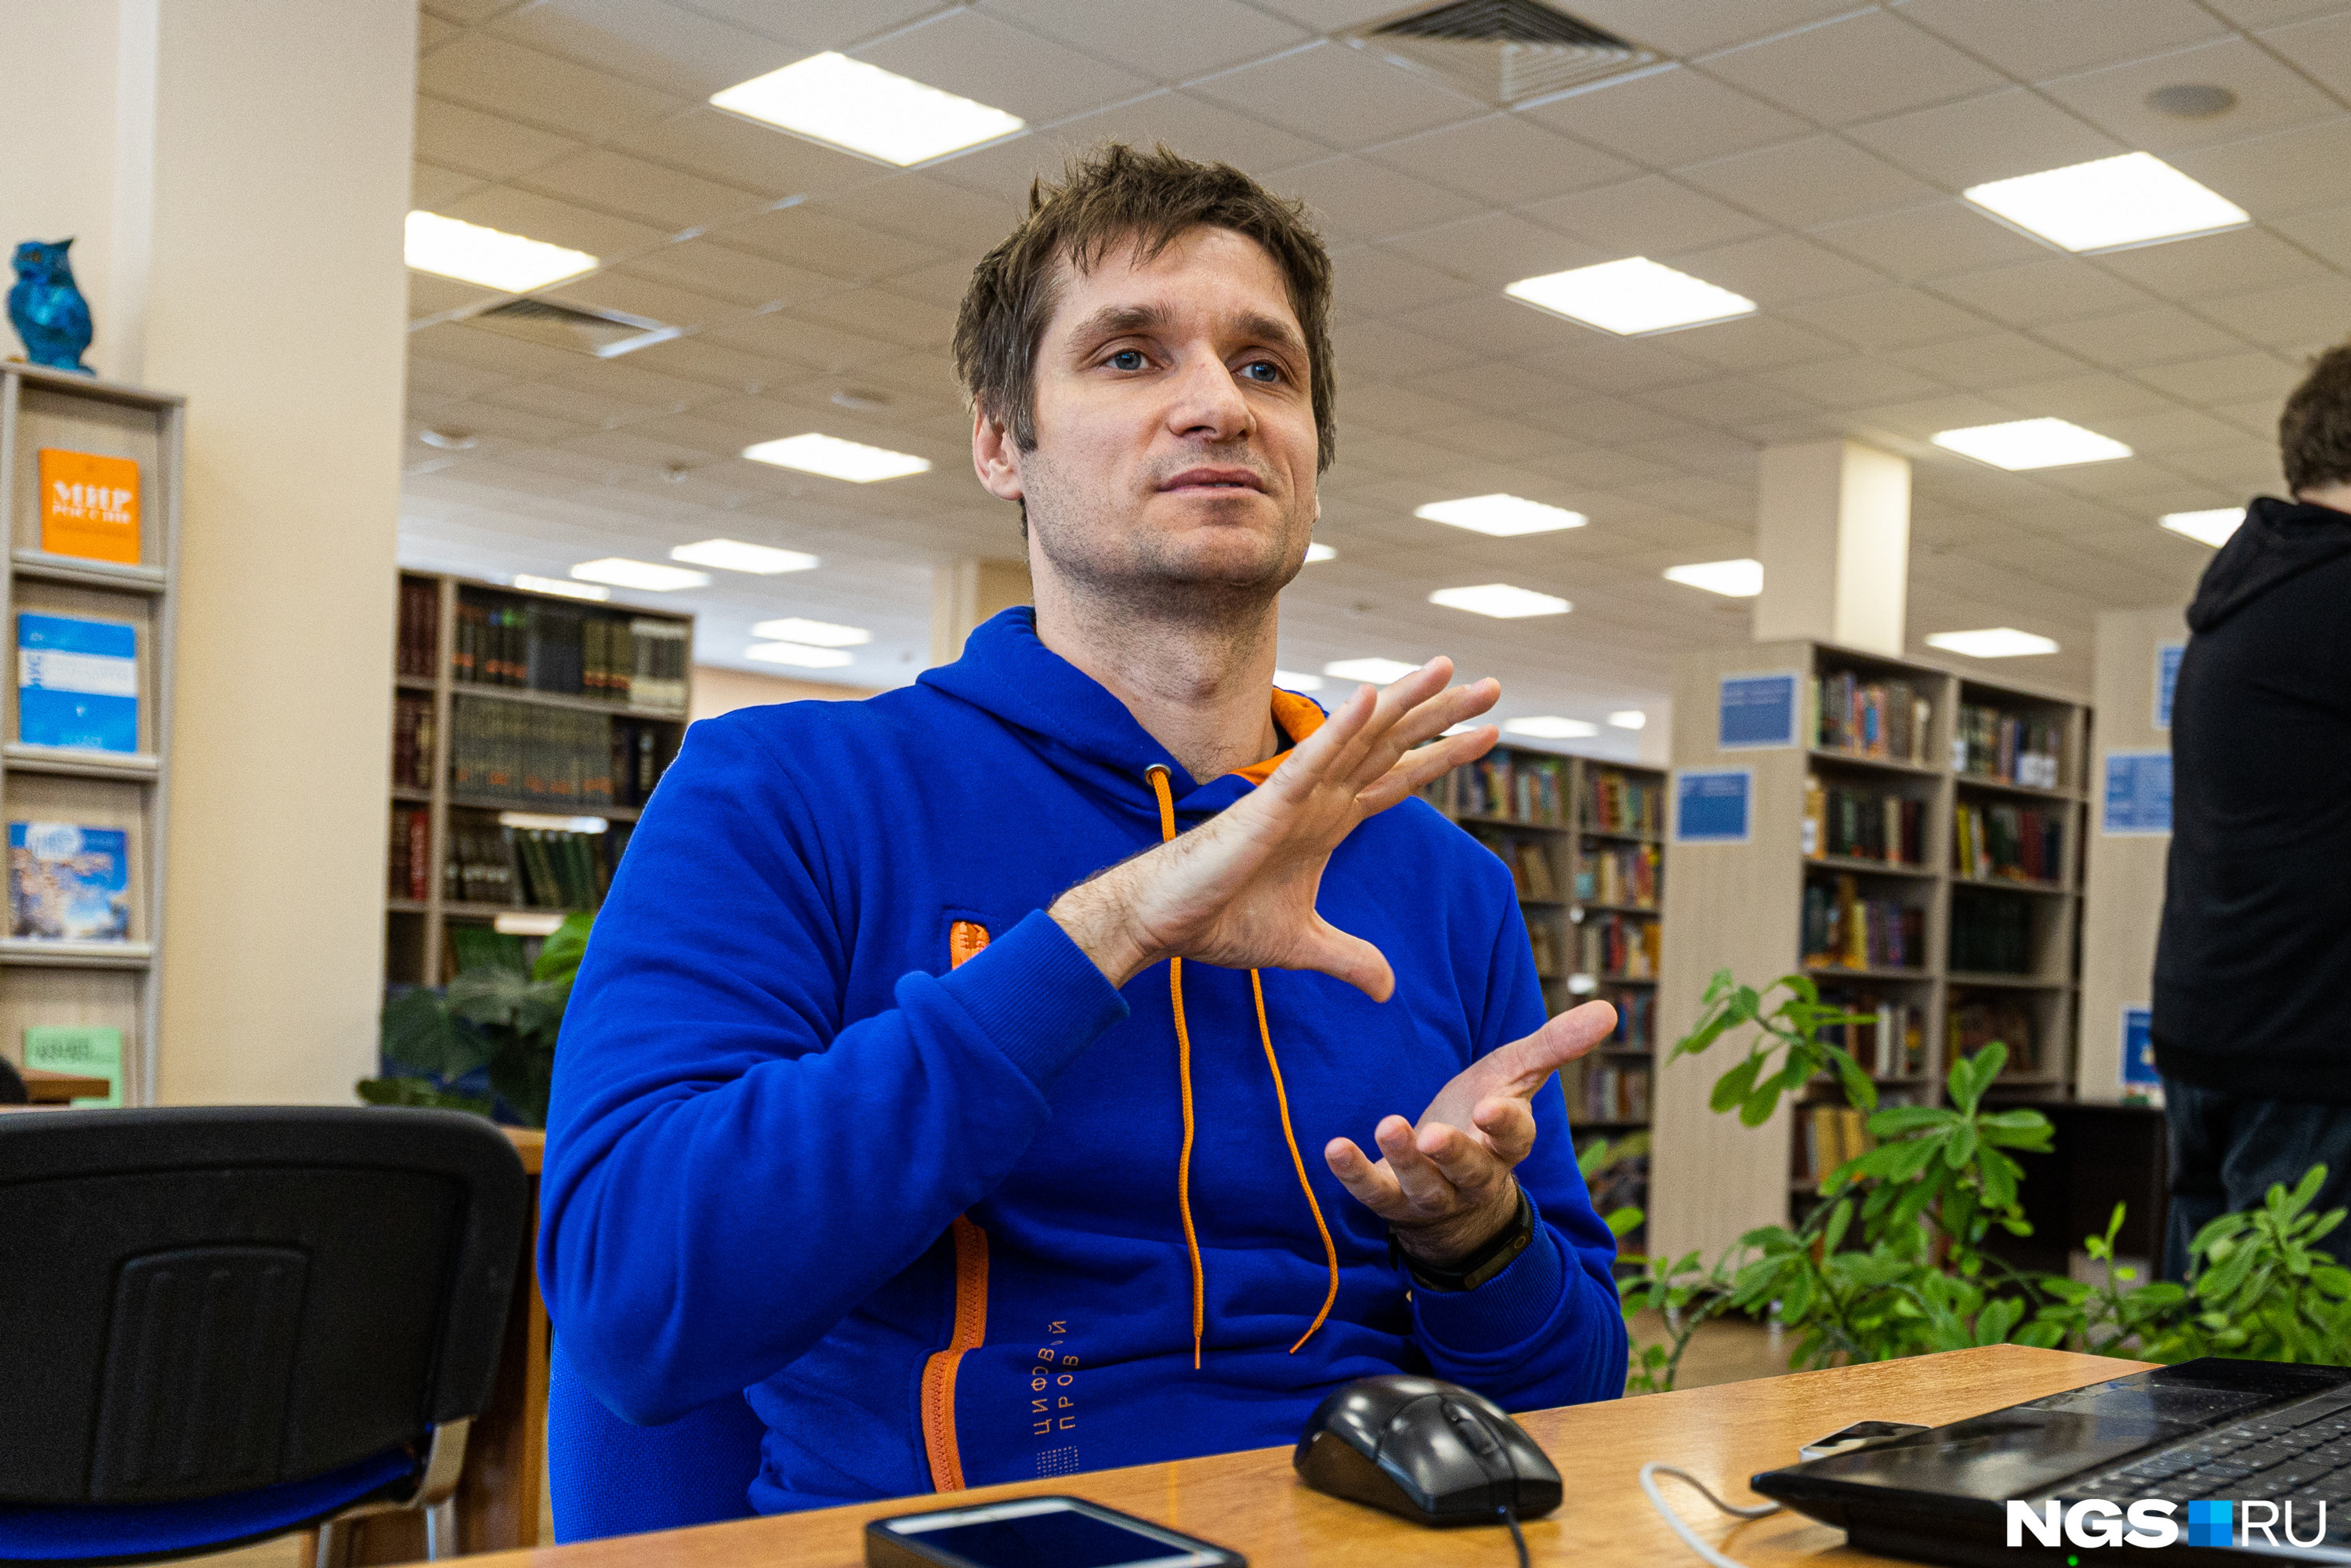 Грант в 10 миллионов рублей команда потратит на двухлетнюю работу по разработке переводчика жестов